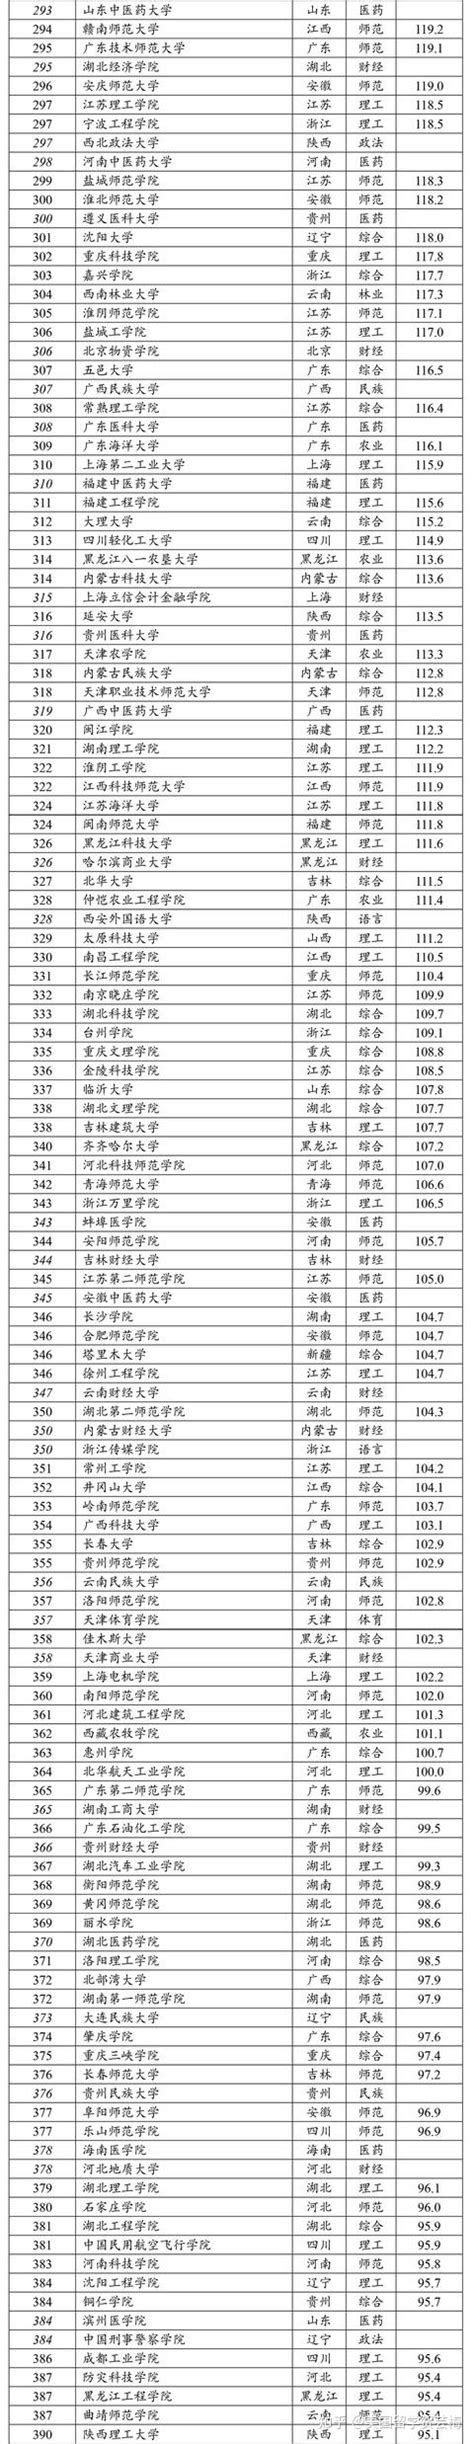 2020年中国大学排名 - 知乎